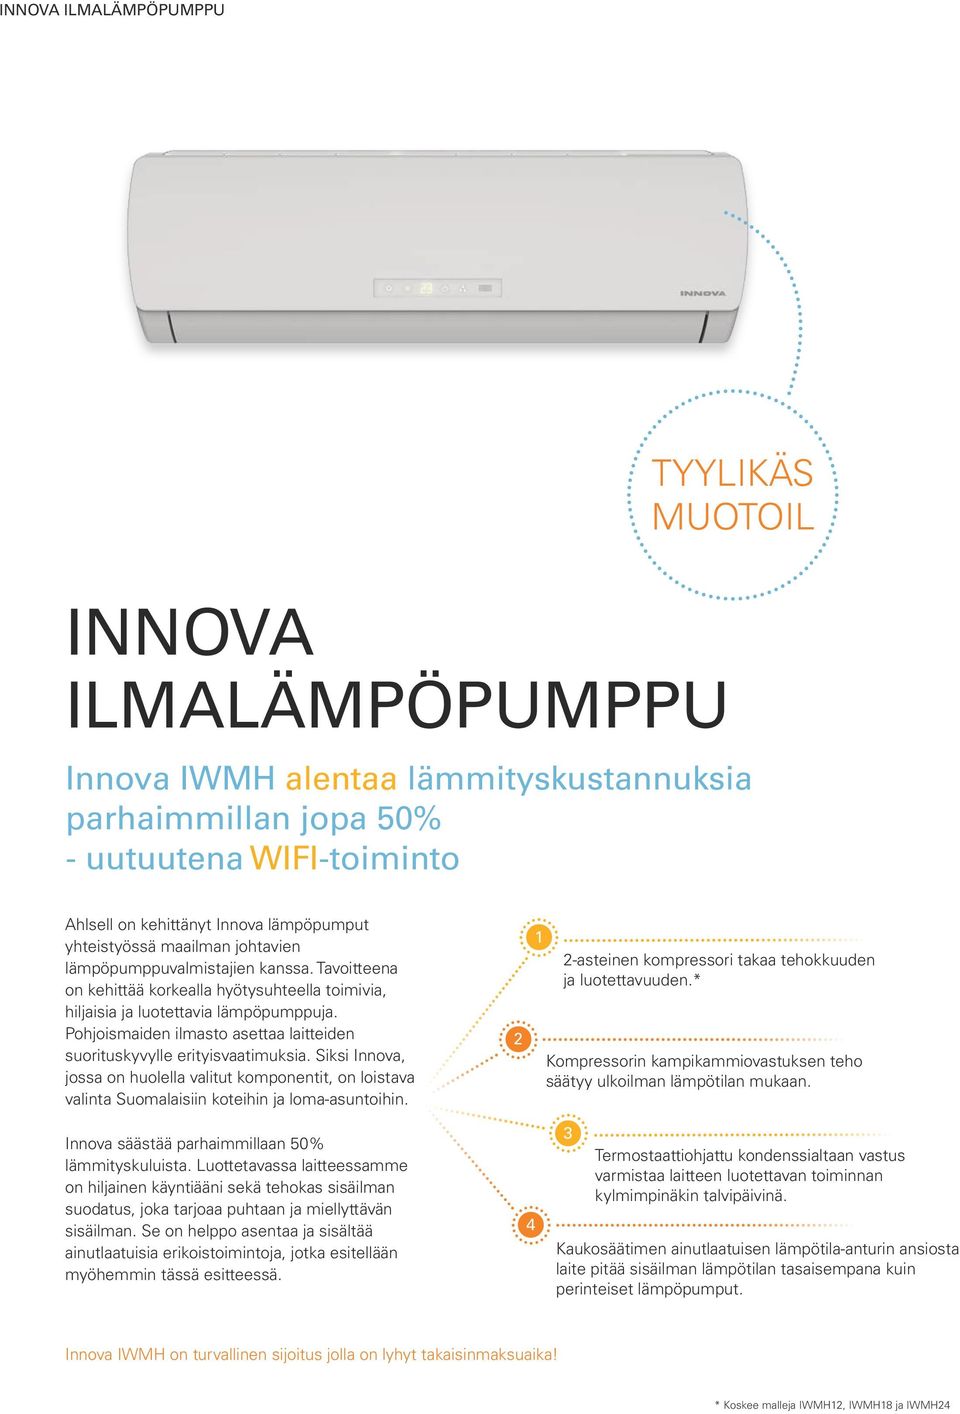 Pohjoismaiden ilmasto asettaa laitteiden suorituskyvylle erityisvaatimuksia. Siksi Innova, jossa on huolella valitut komponentit, on loistava valinta Suomalaisiin koteihin ja loma-asuntoihin.